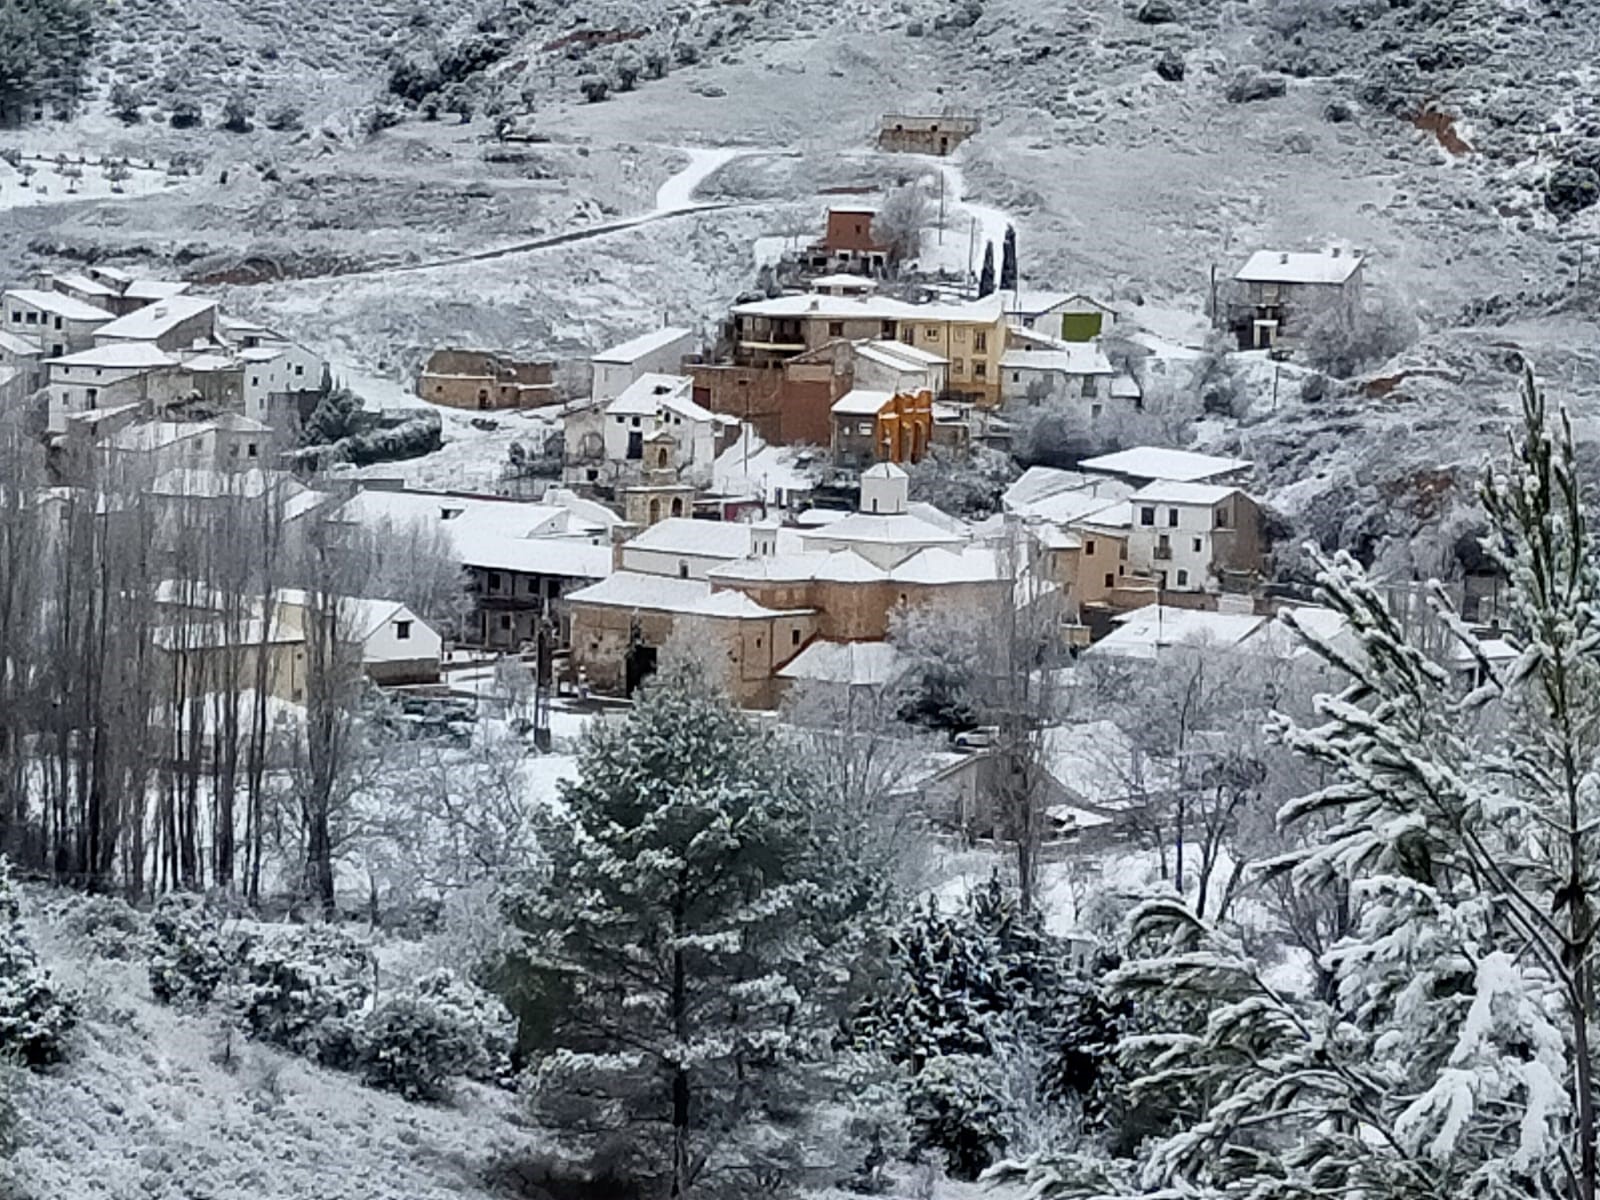 Renera, a las cuatro de la tarde del 7 de enero de 2021, bajo la nieve. (Foto: Maribel Martín Duró)